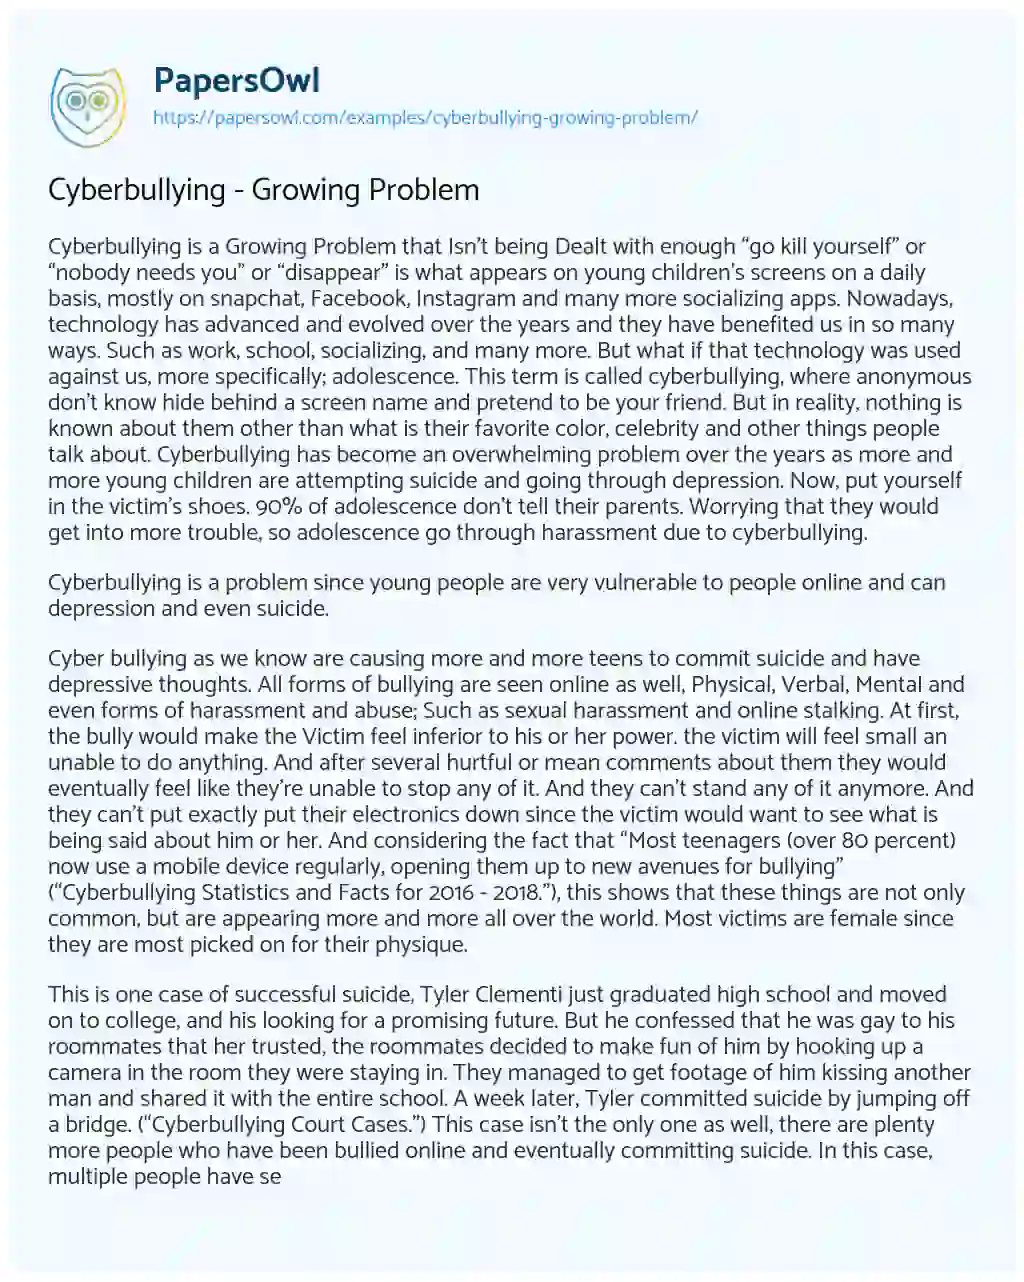 Cyberbullying – Growing Problem essay